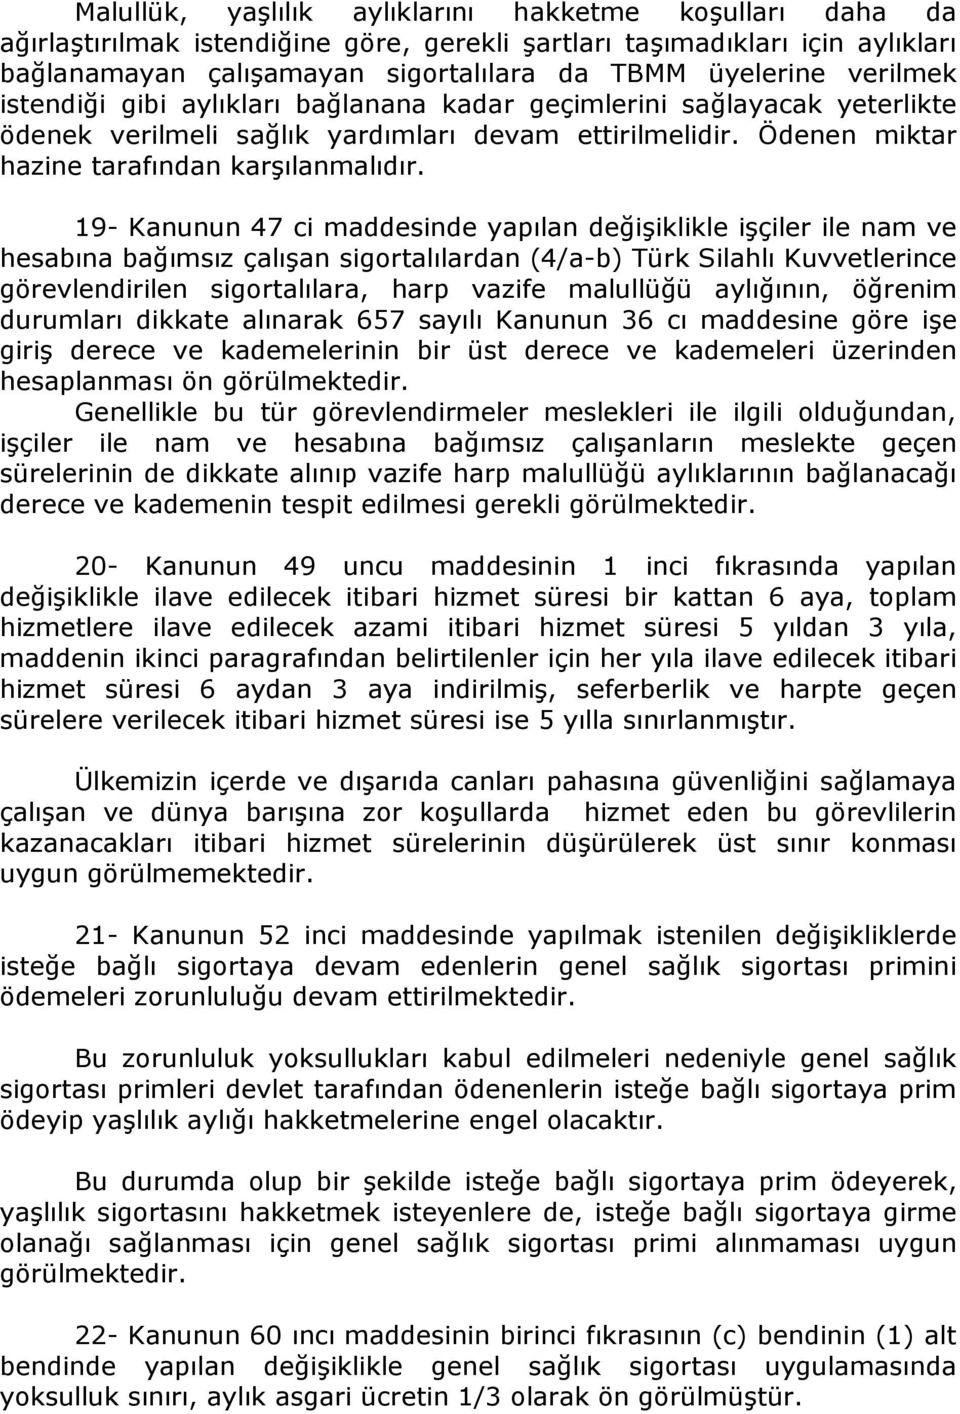 19- Kanunun 47 ci maddesinde yapılan değişiklikle işçiler ile nam ve hesabına bağımsız çalışan sigortalılardan (4/a-b) Türk Silahlı Kuvvetlerince görevlendirilen sigortalılara, harp vazife malullüğü